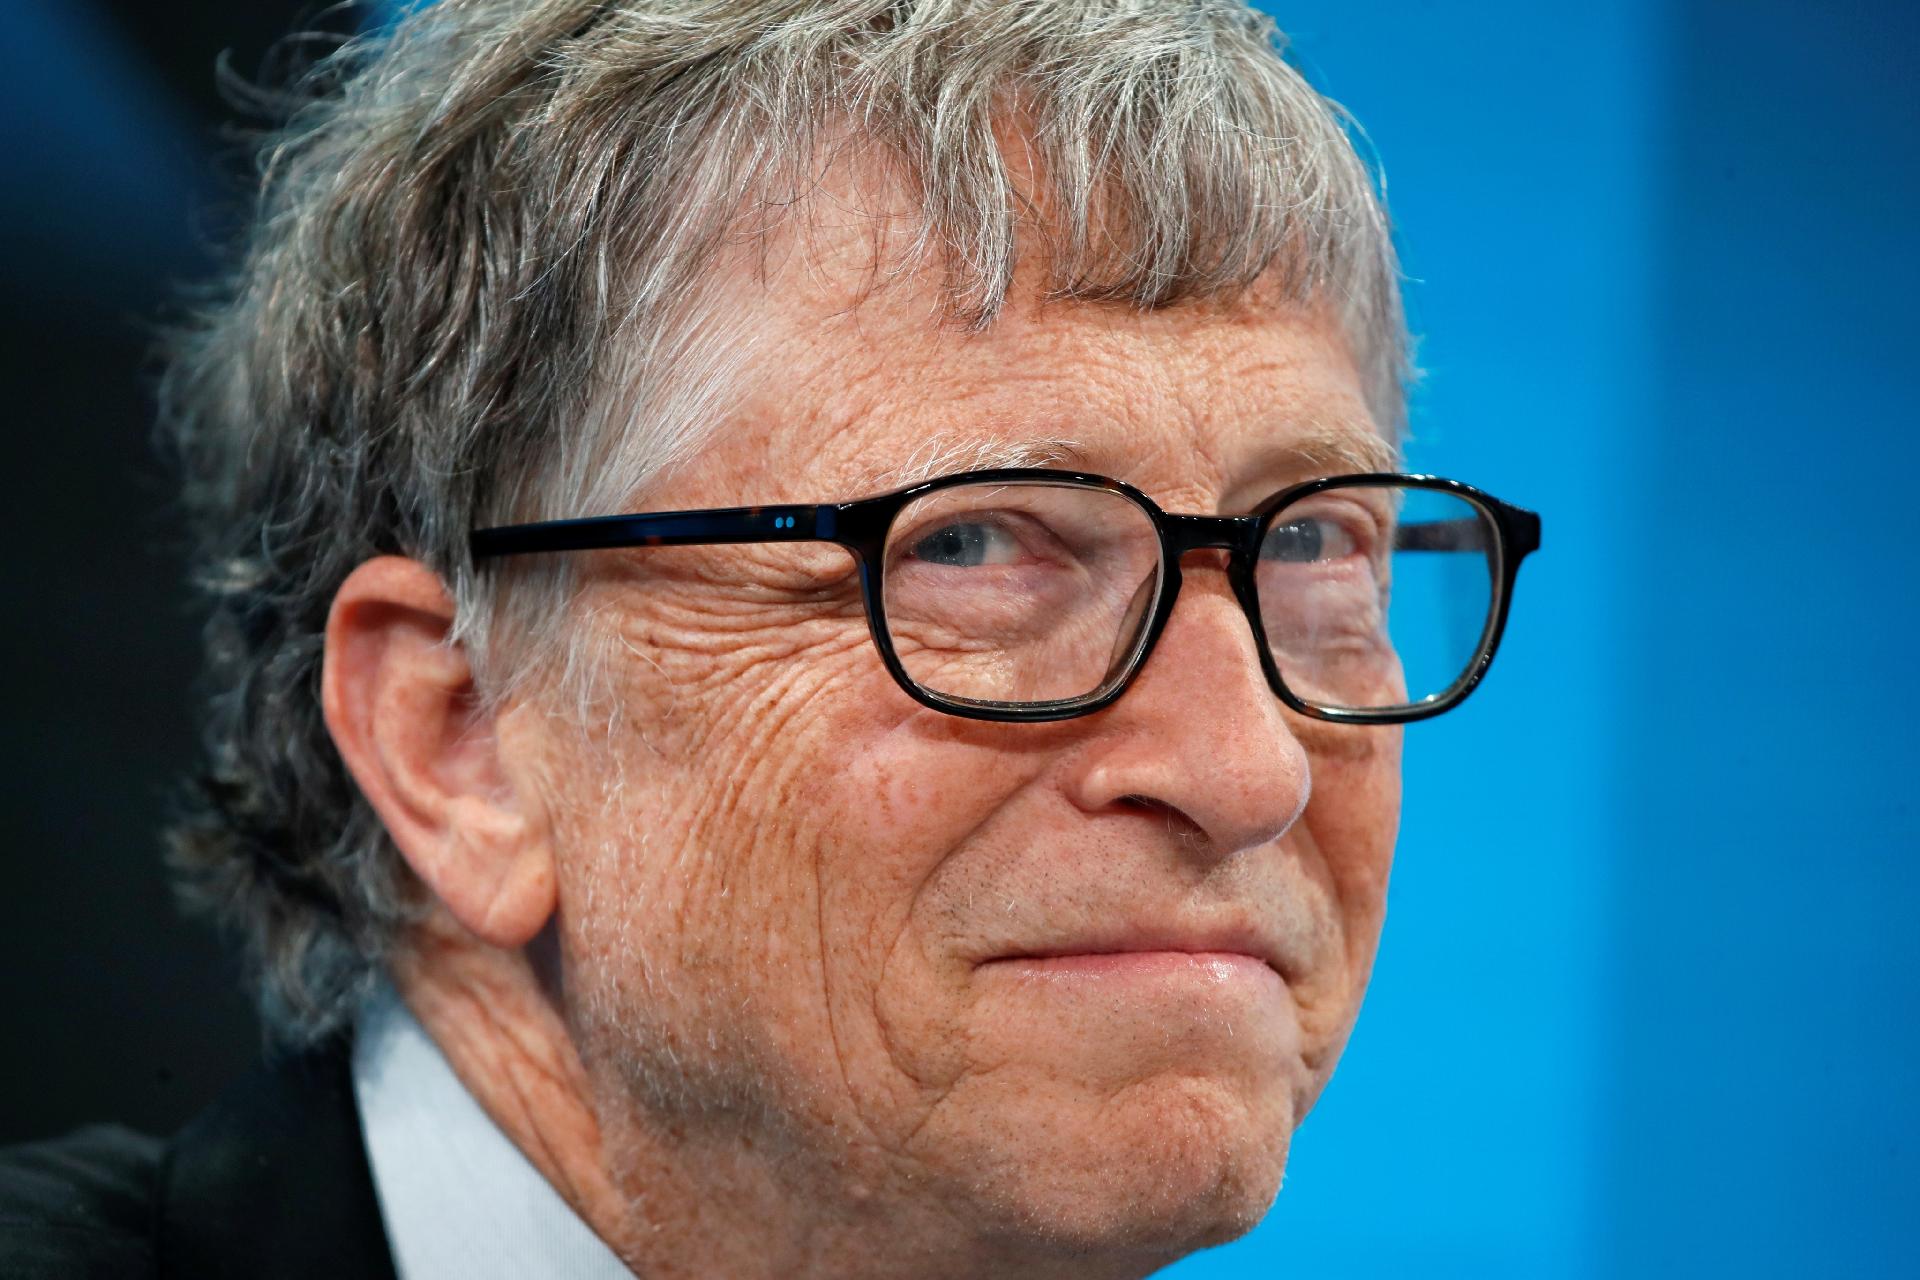 Bill Gates financia 'teste caseiro' que detecta Coronavírus - TecMundo